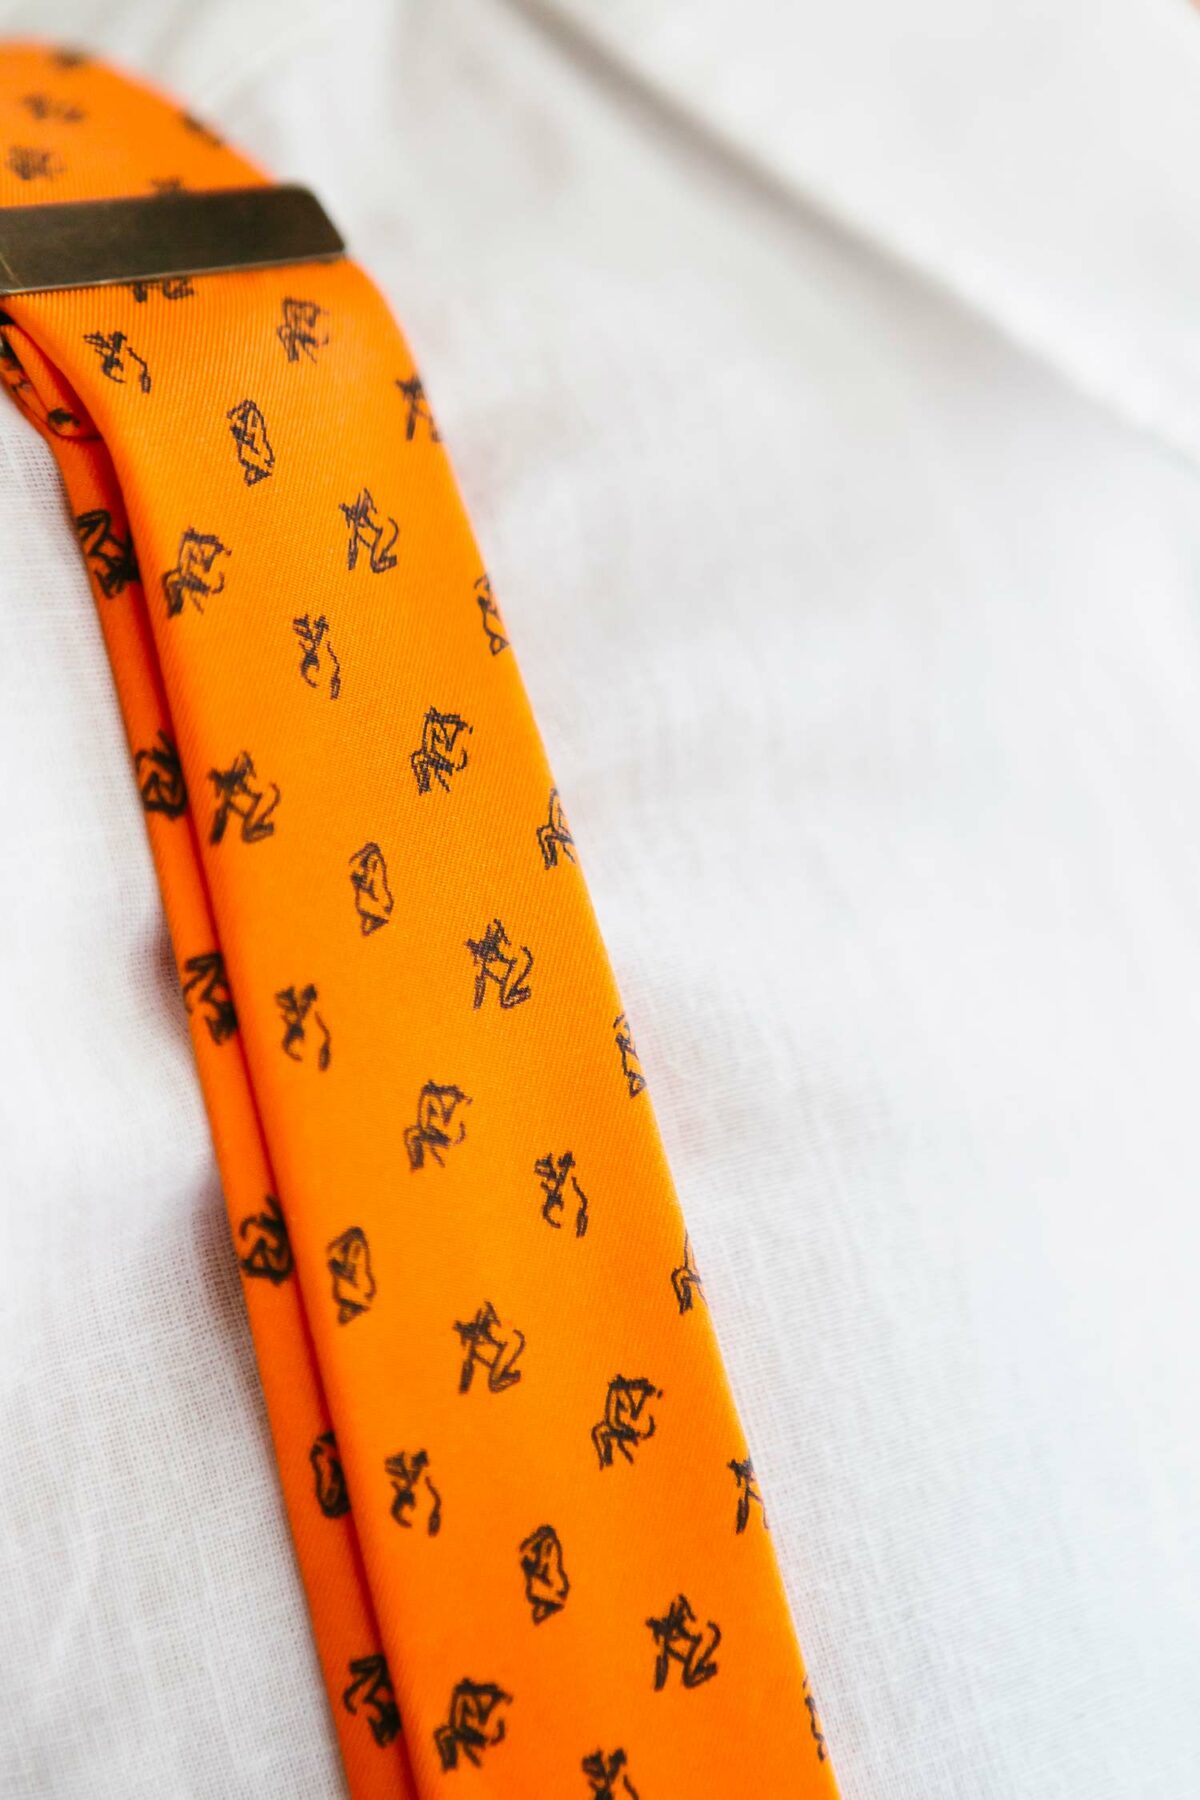 orange suspenders for men